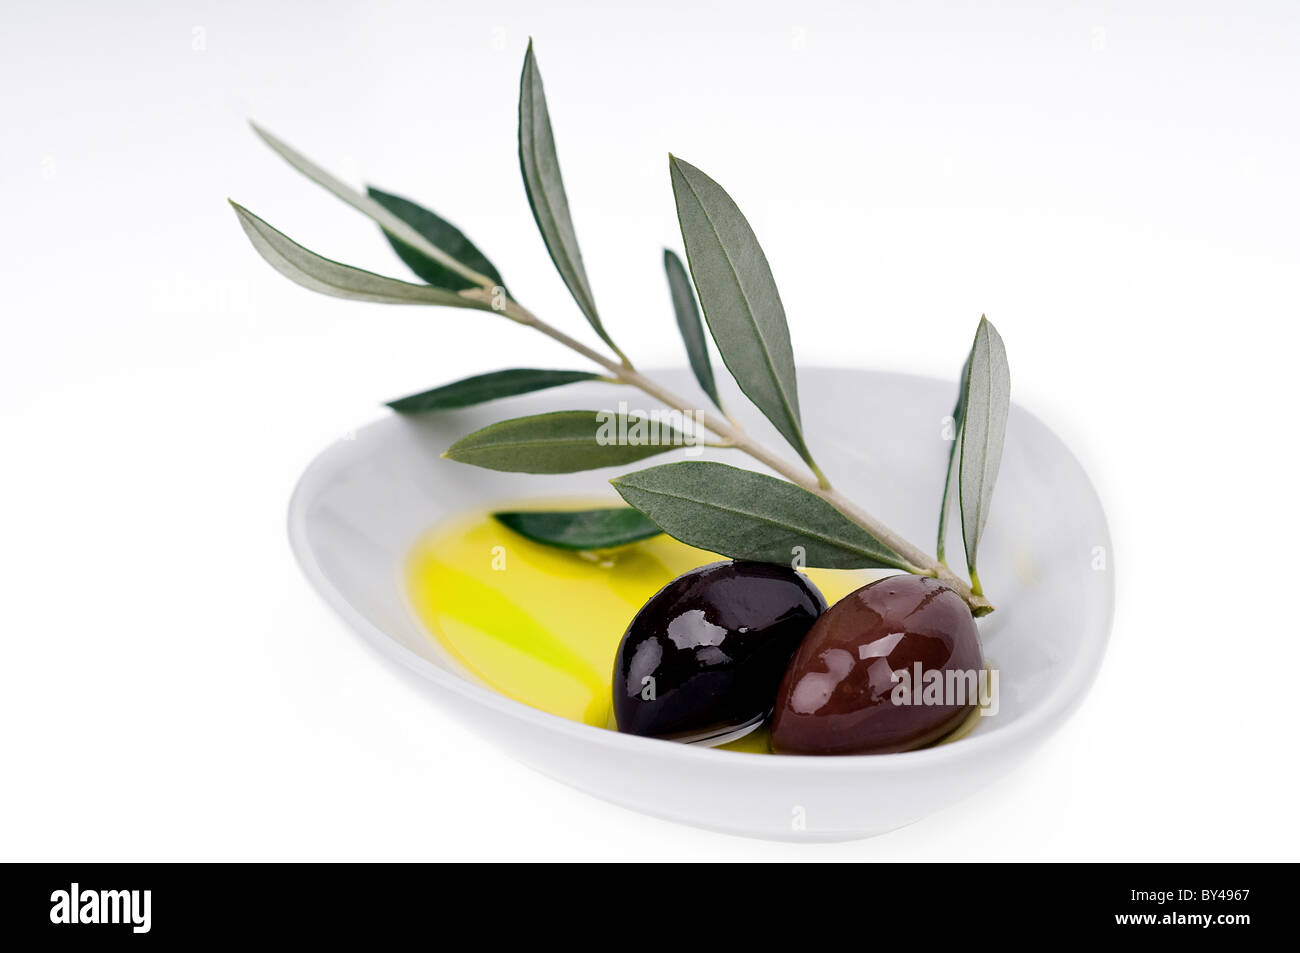 Plaque avec deux olives noires Kalamata ( kalamon) sur une branche et fond blanc Banque D'Images